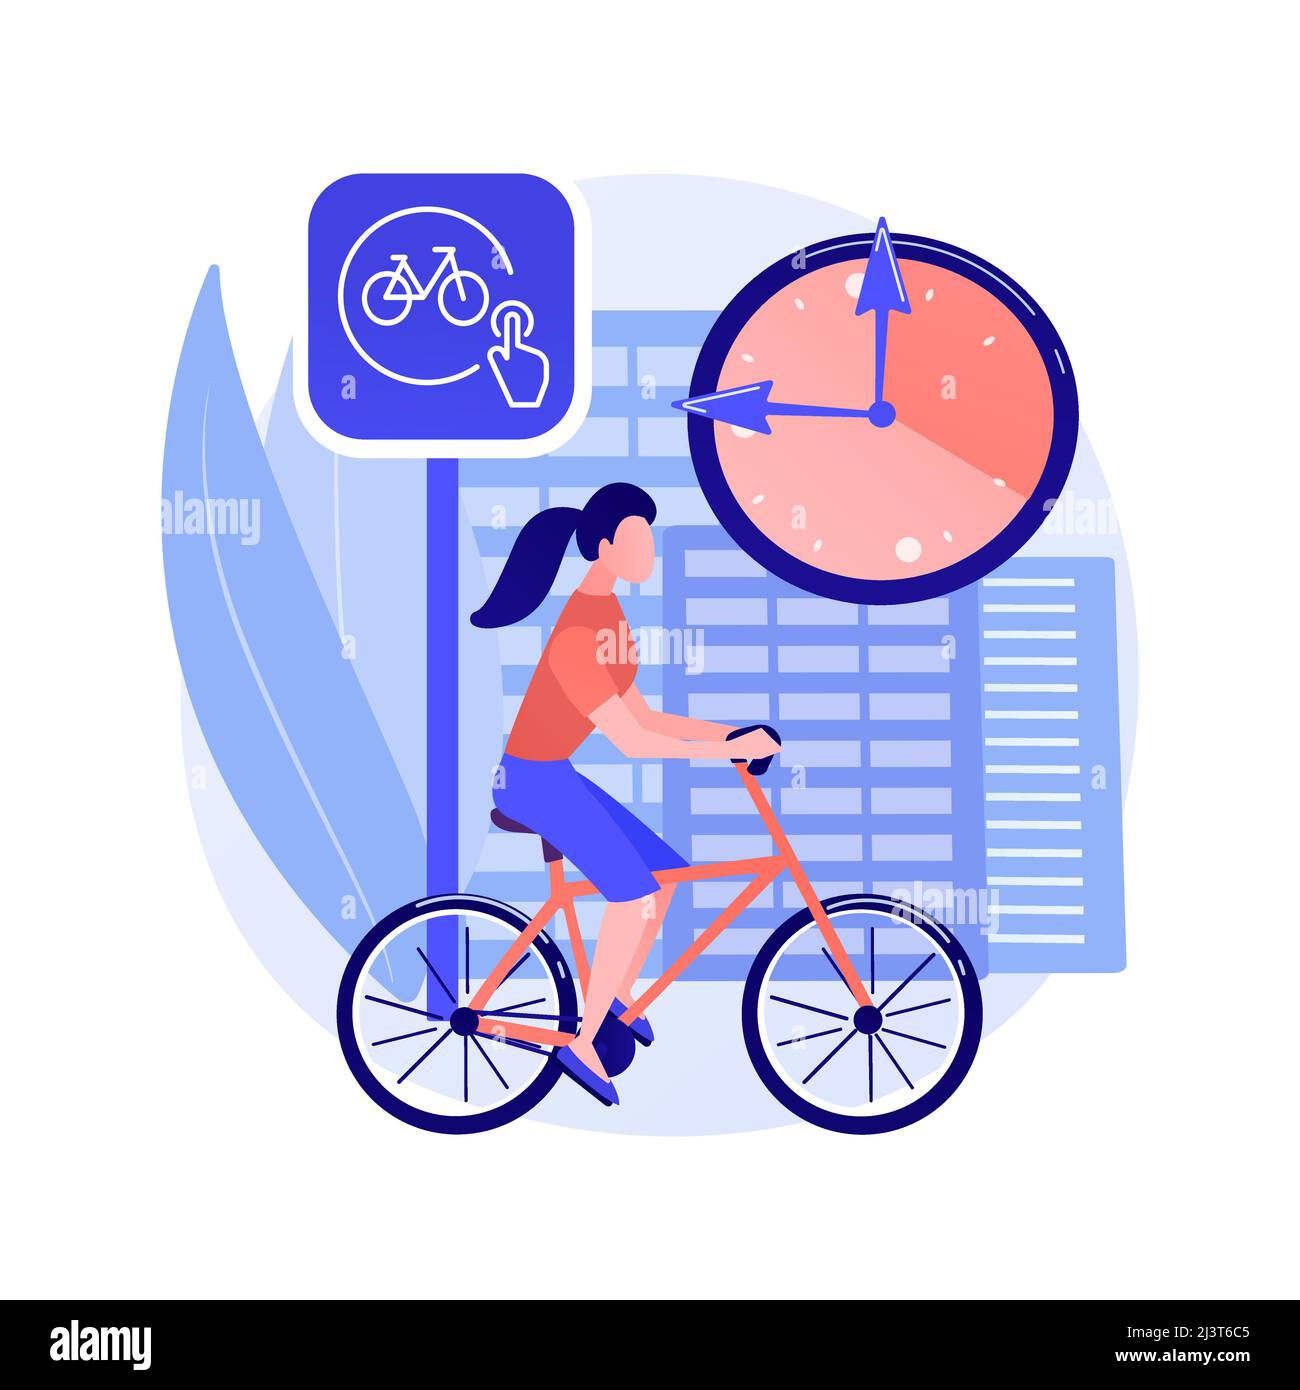 Illustration vectorielle abstraite de concept de partage de vélo. Location publique de vélos, application de partage de vélos, transport urbain vert, réserver un trajet en ligne, ec Illustration de Vecteur